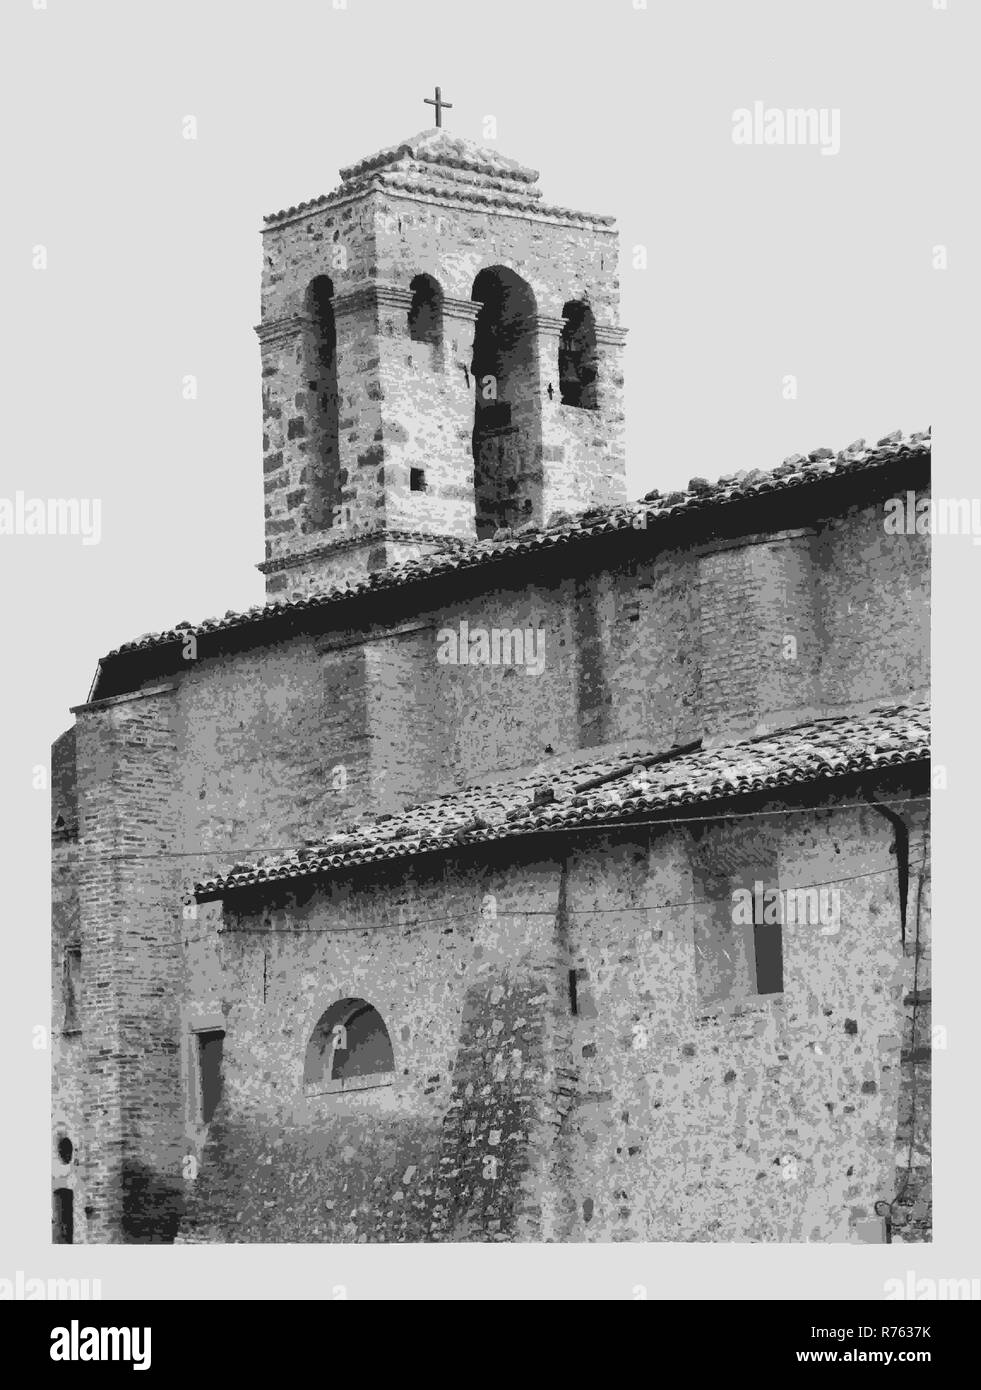 Abruzzo Alanno Madonna delle Grazie, c'est mon l'Italie, l'Italie Pays de l'histoire visuelle, de l'architecture médiévale, sculpture, fresques 16-17ème siècle Banque D'Images